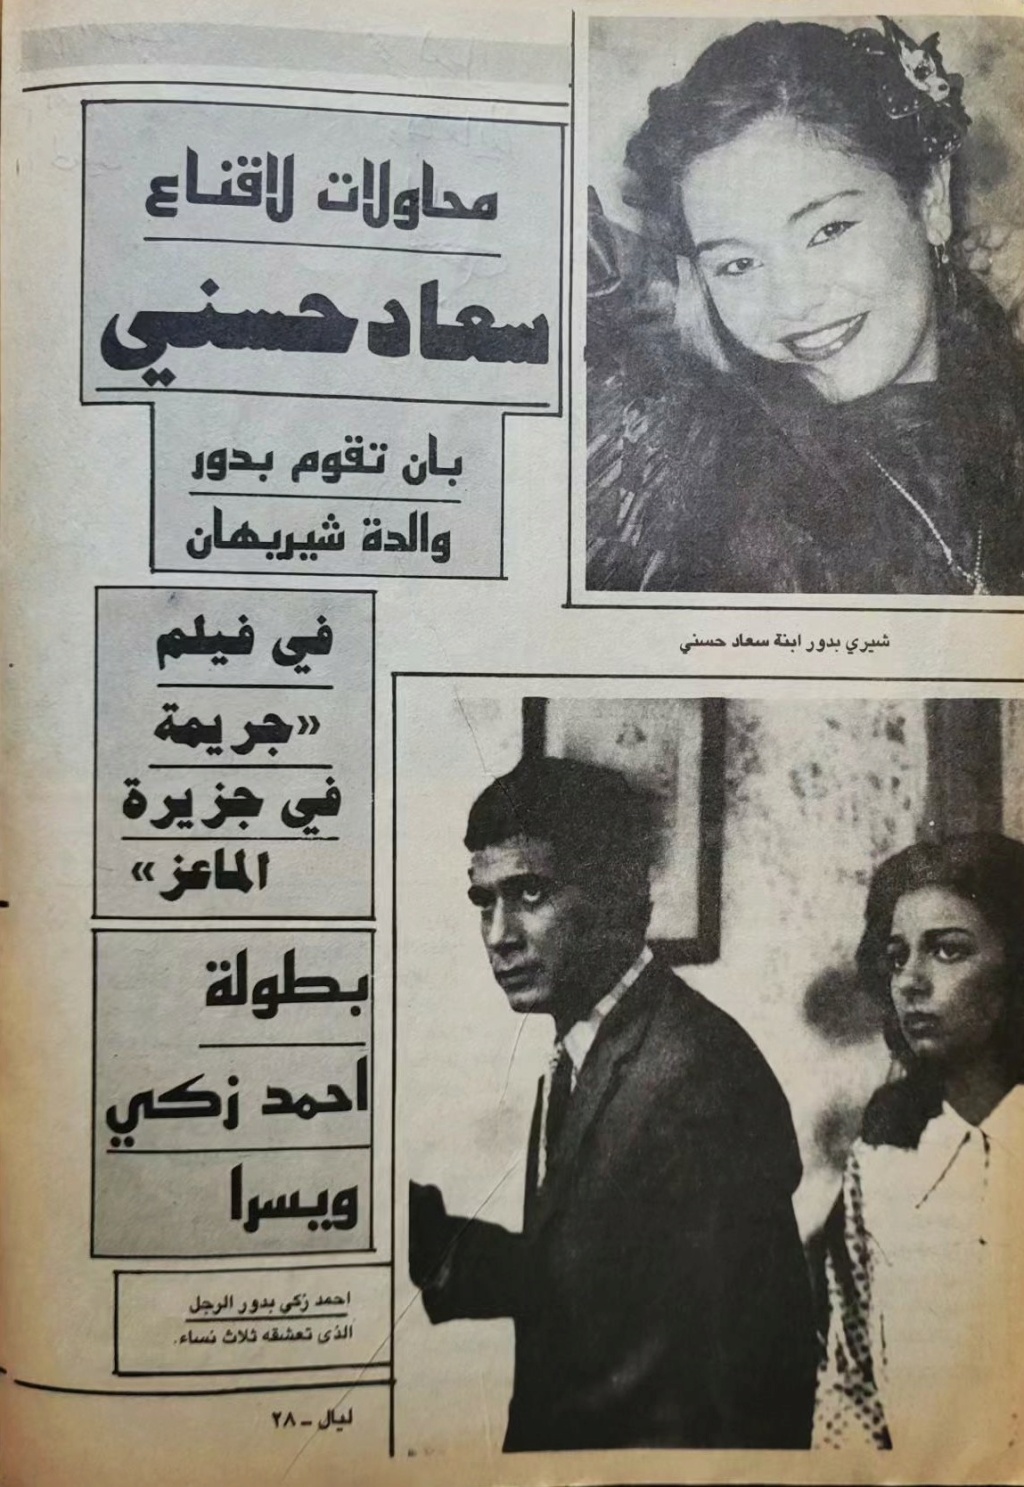 1987 - مقال صحفي : محاولات لاقناع سعاد حسني بان تقوم بدور والدة شيريهان 1987 م 1469